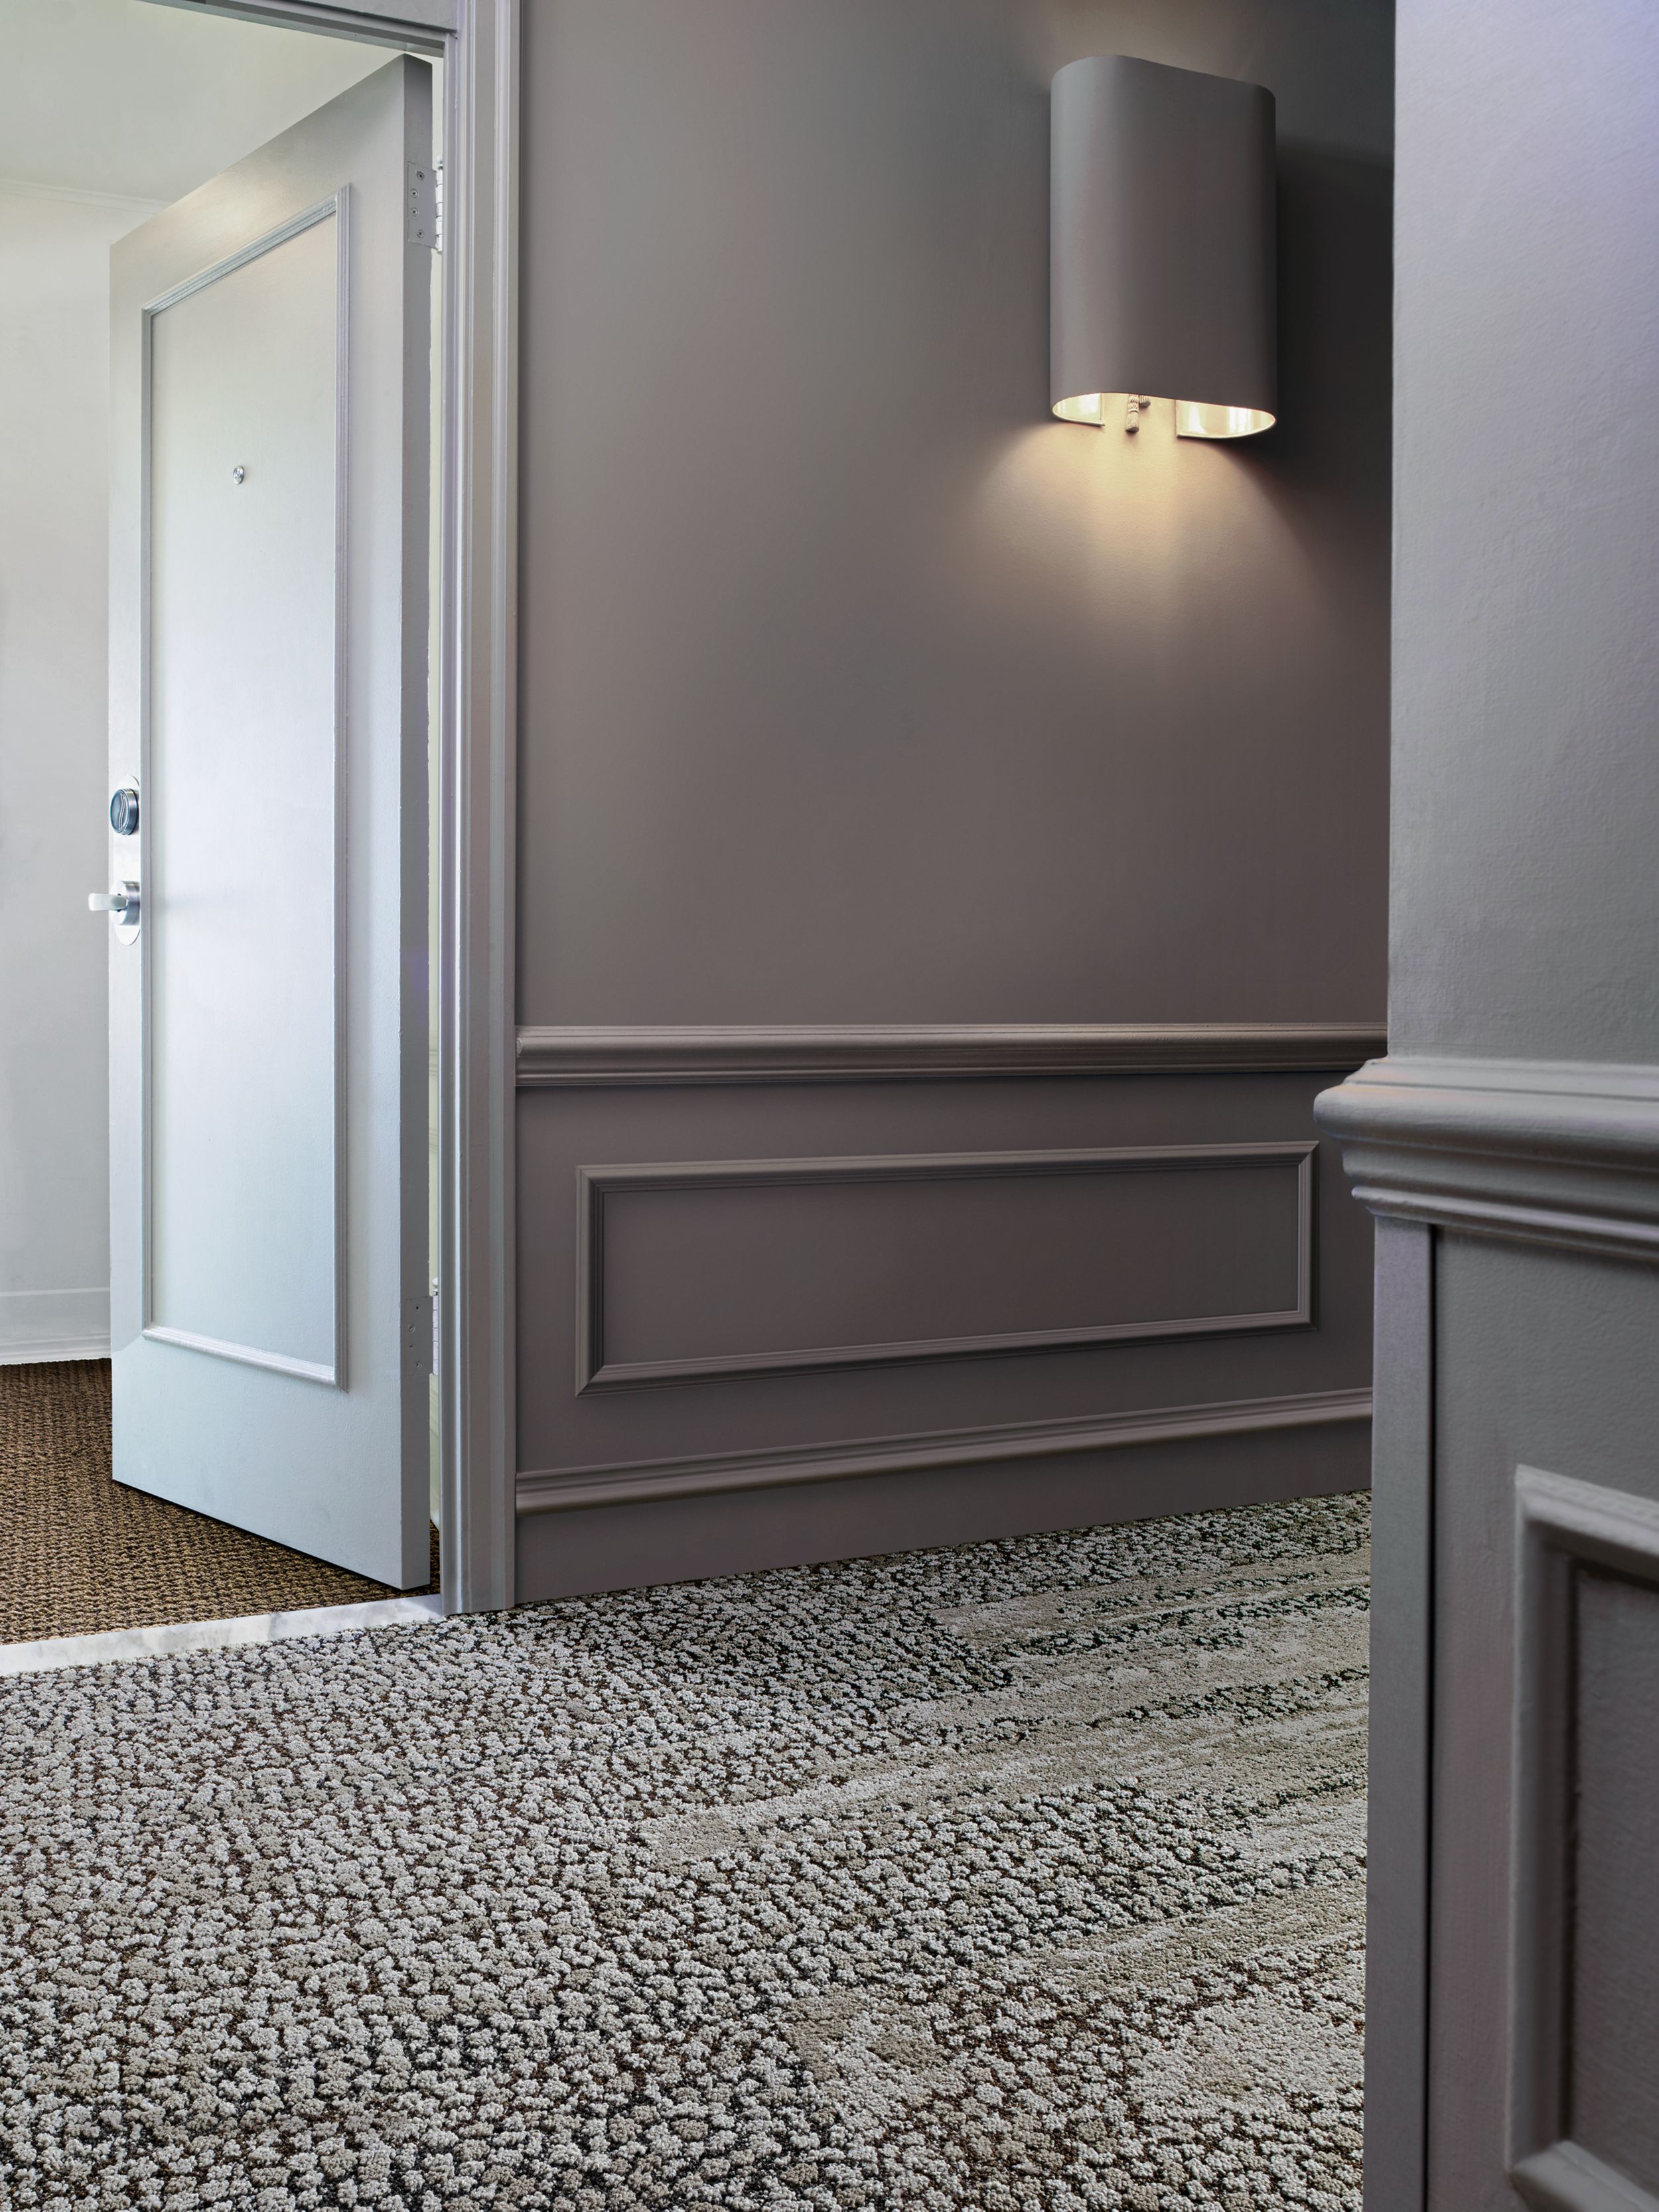 Interface HN840, HN850 and RMS 607 plank carpet tiles in hotel hallway with hotel room door ajar número de imagen 8